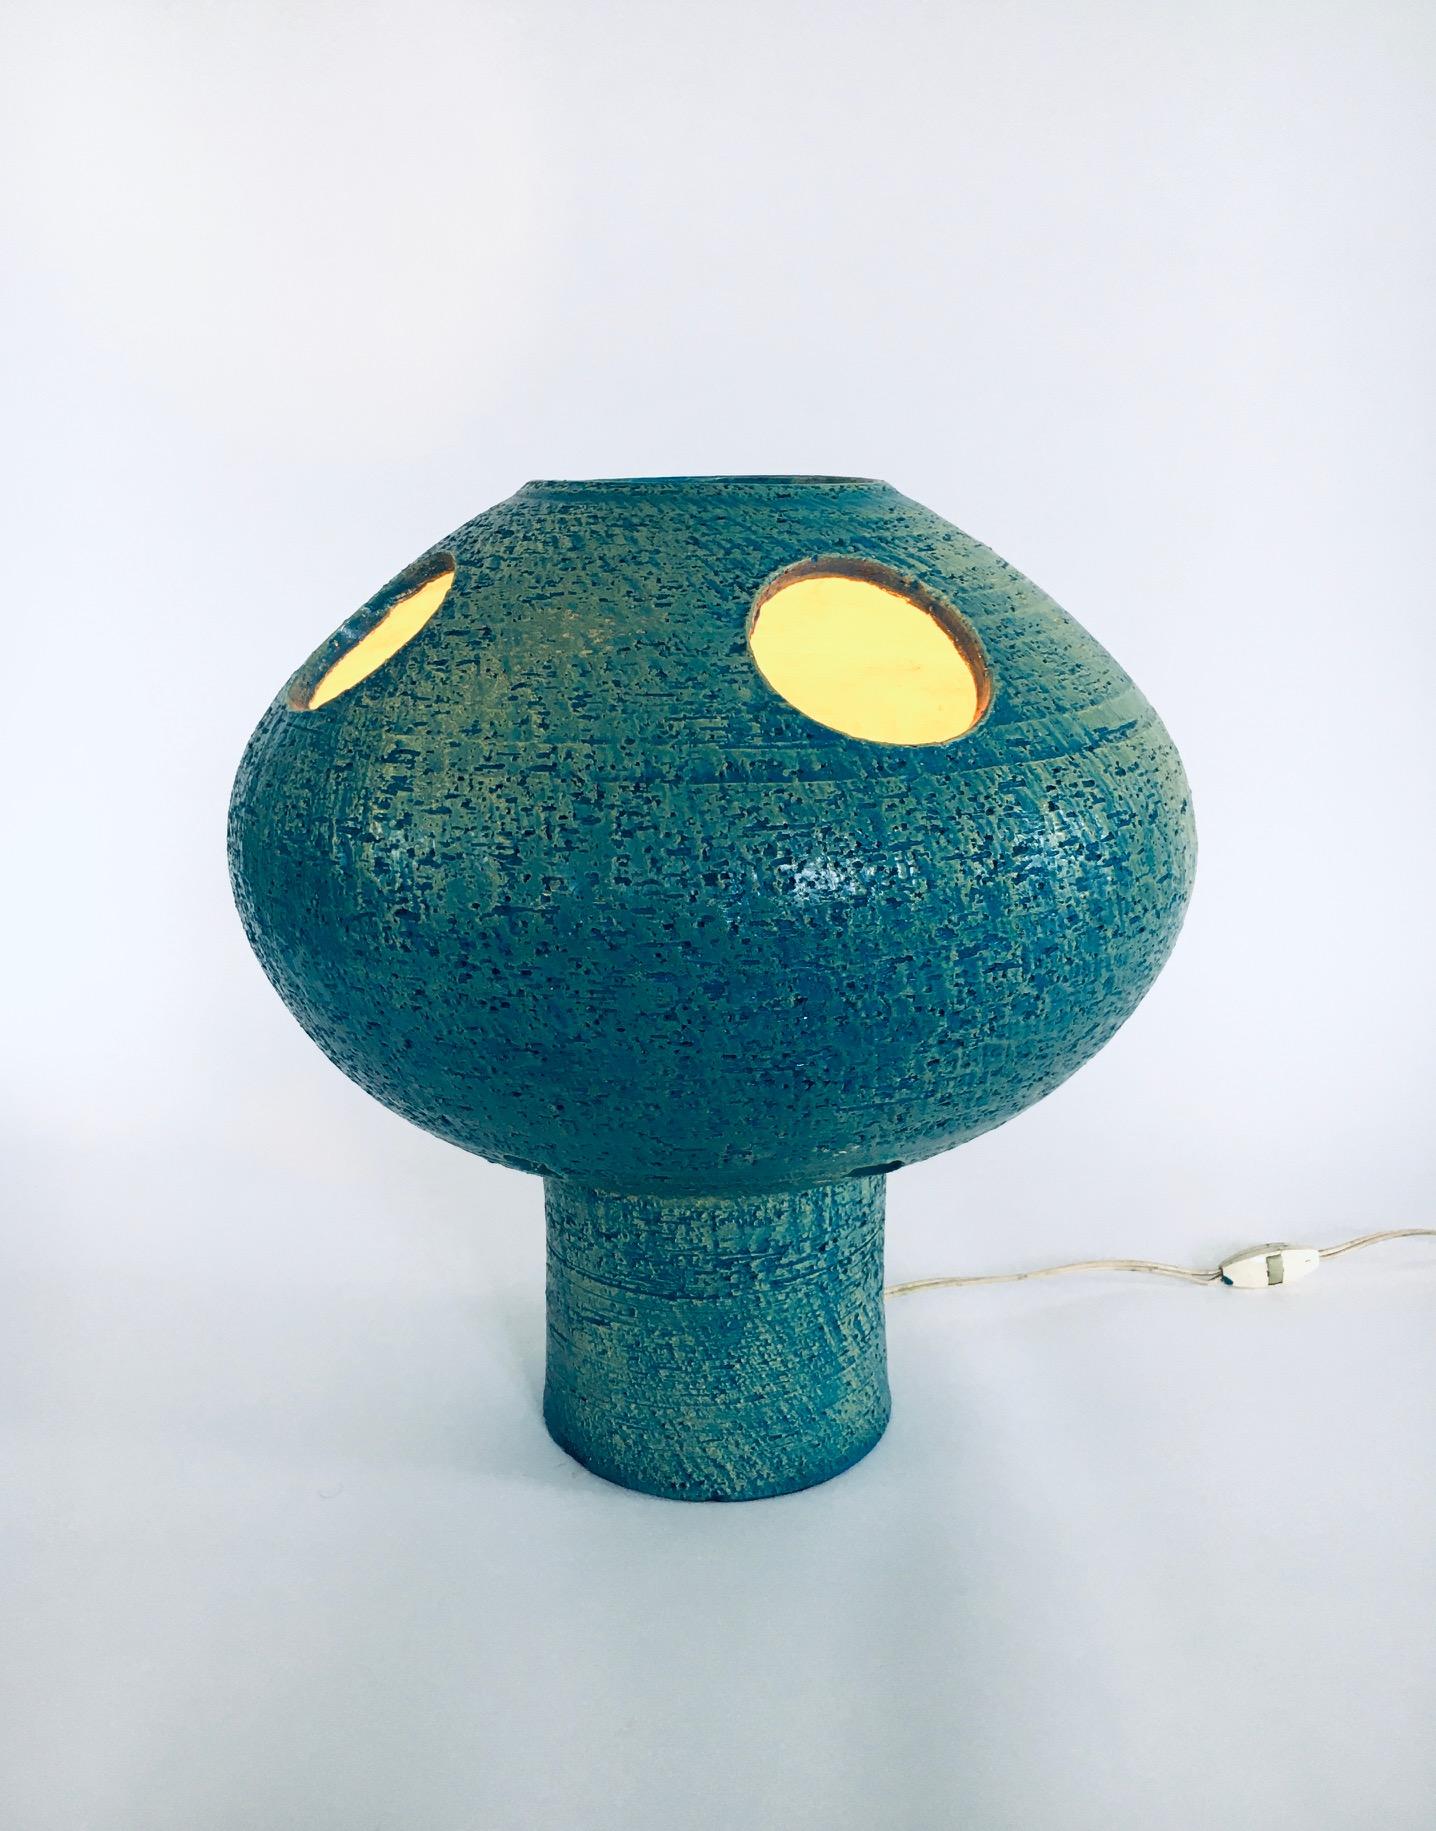 Vintage Brutalist Midcentury Dutch Design Art Studio Pottery Ceramic MUSHROOM Table Lamp. Fabriqué aux Pays-Bas, dans les années 1960. Grand lampadaire ou lampe de table en émaux turquoise / vert menthe avec émail jaune à l'intérieur. Cette lampe en